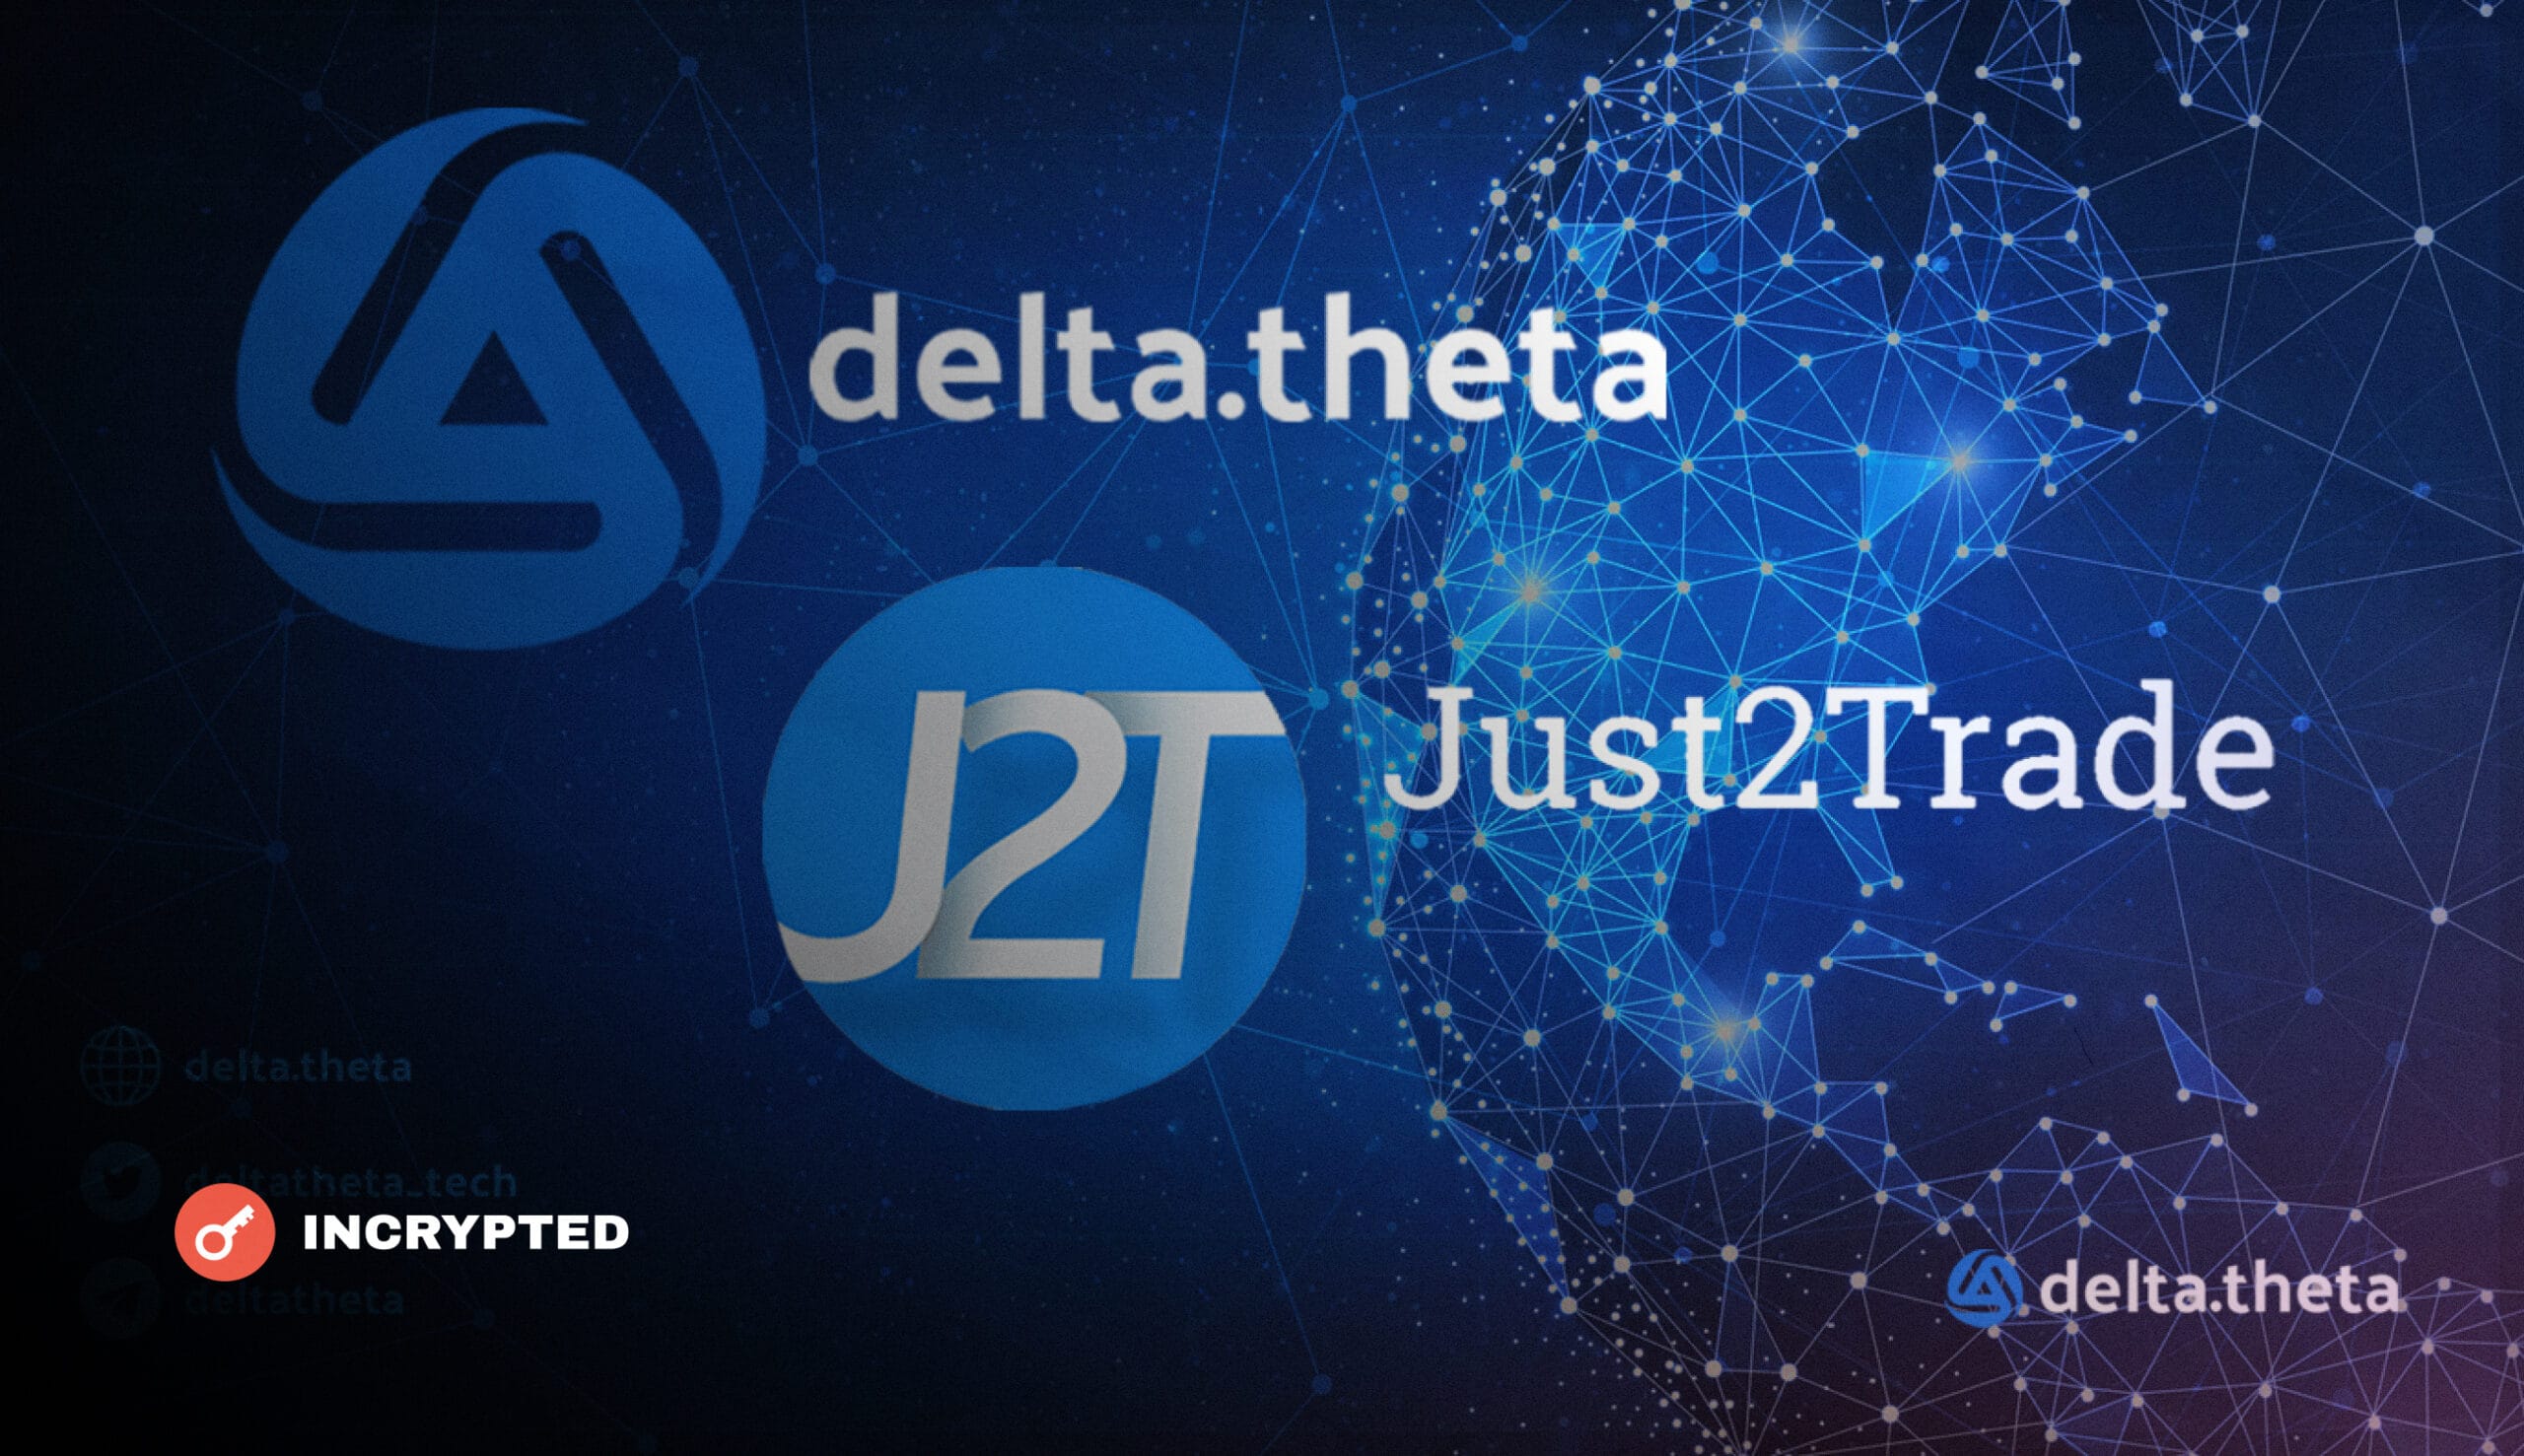 Delta.theta становится доступна для институциональных клиентов, которые принесут дополнительные торговые потоки.